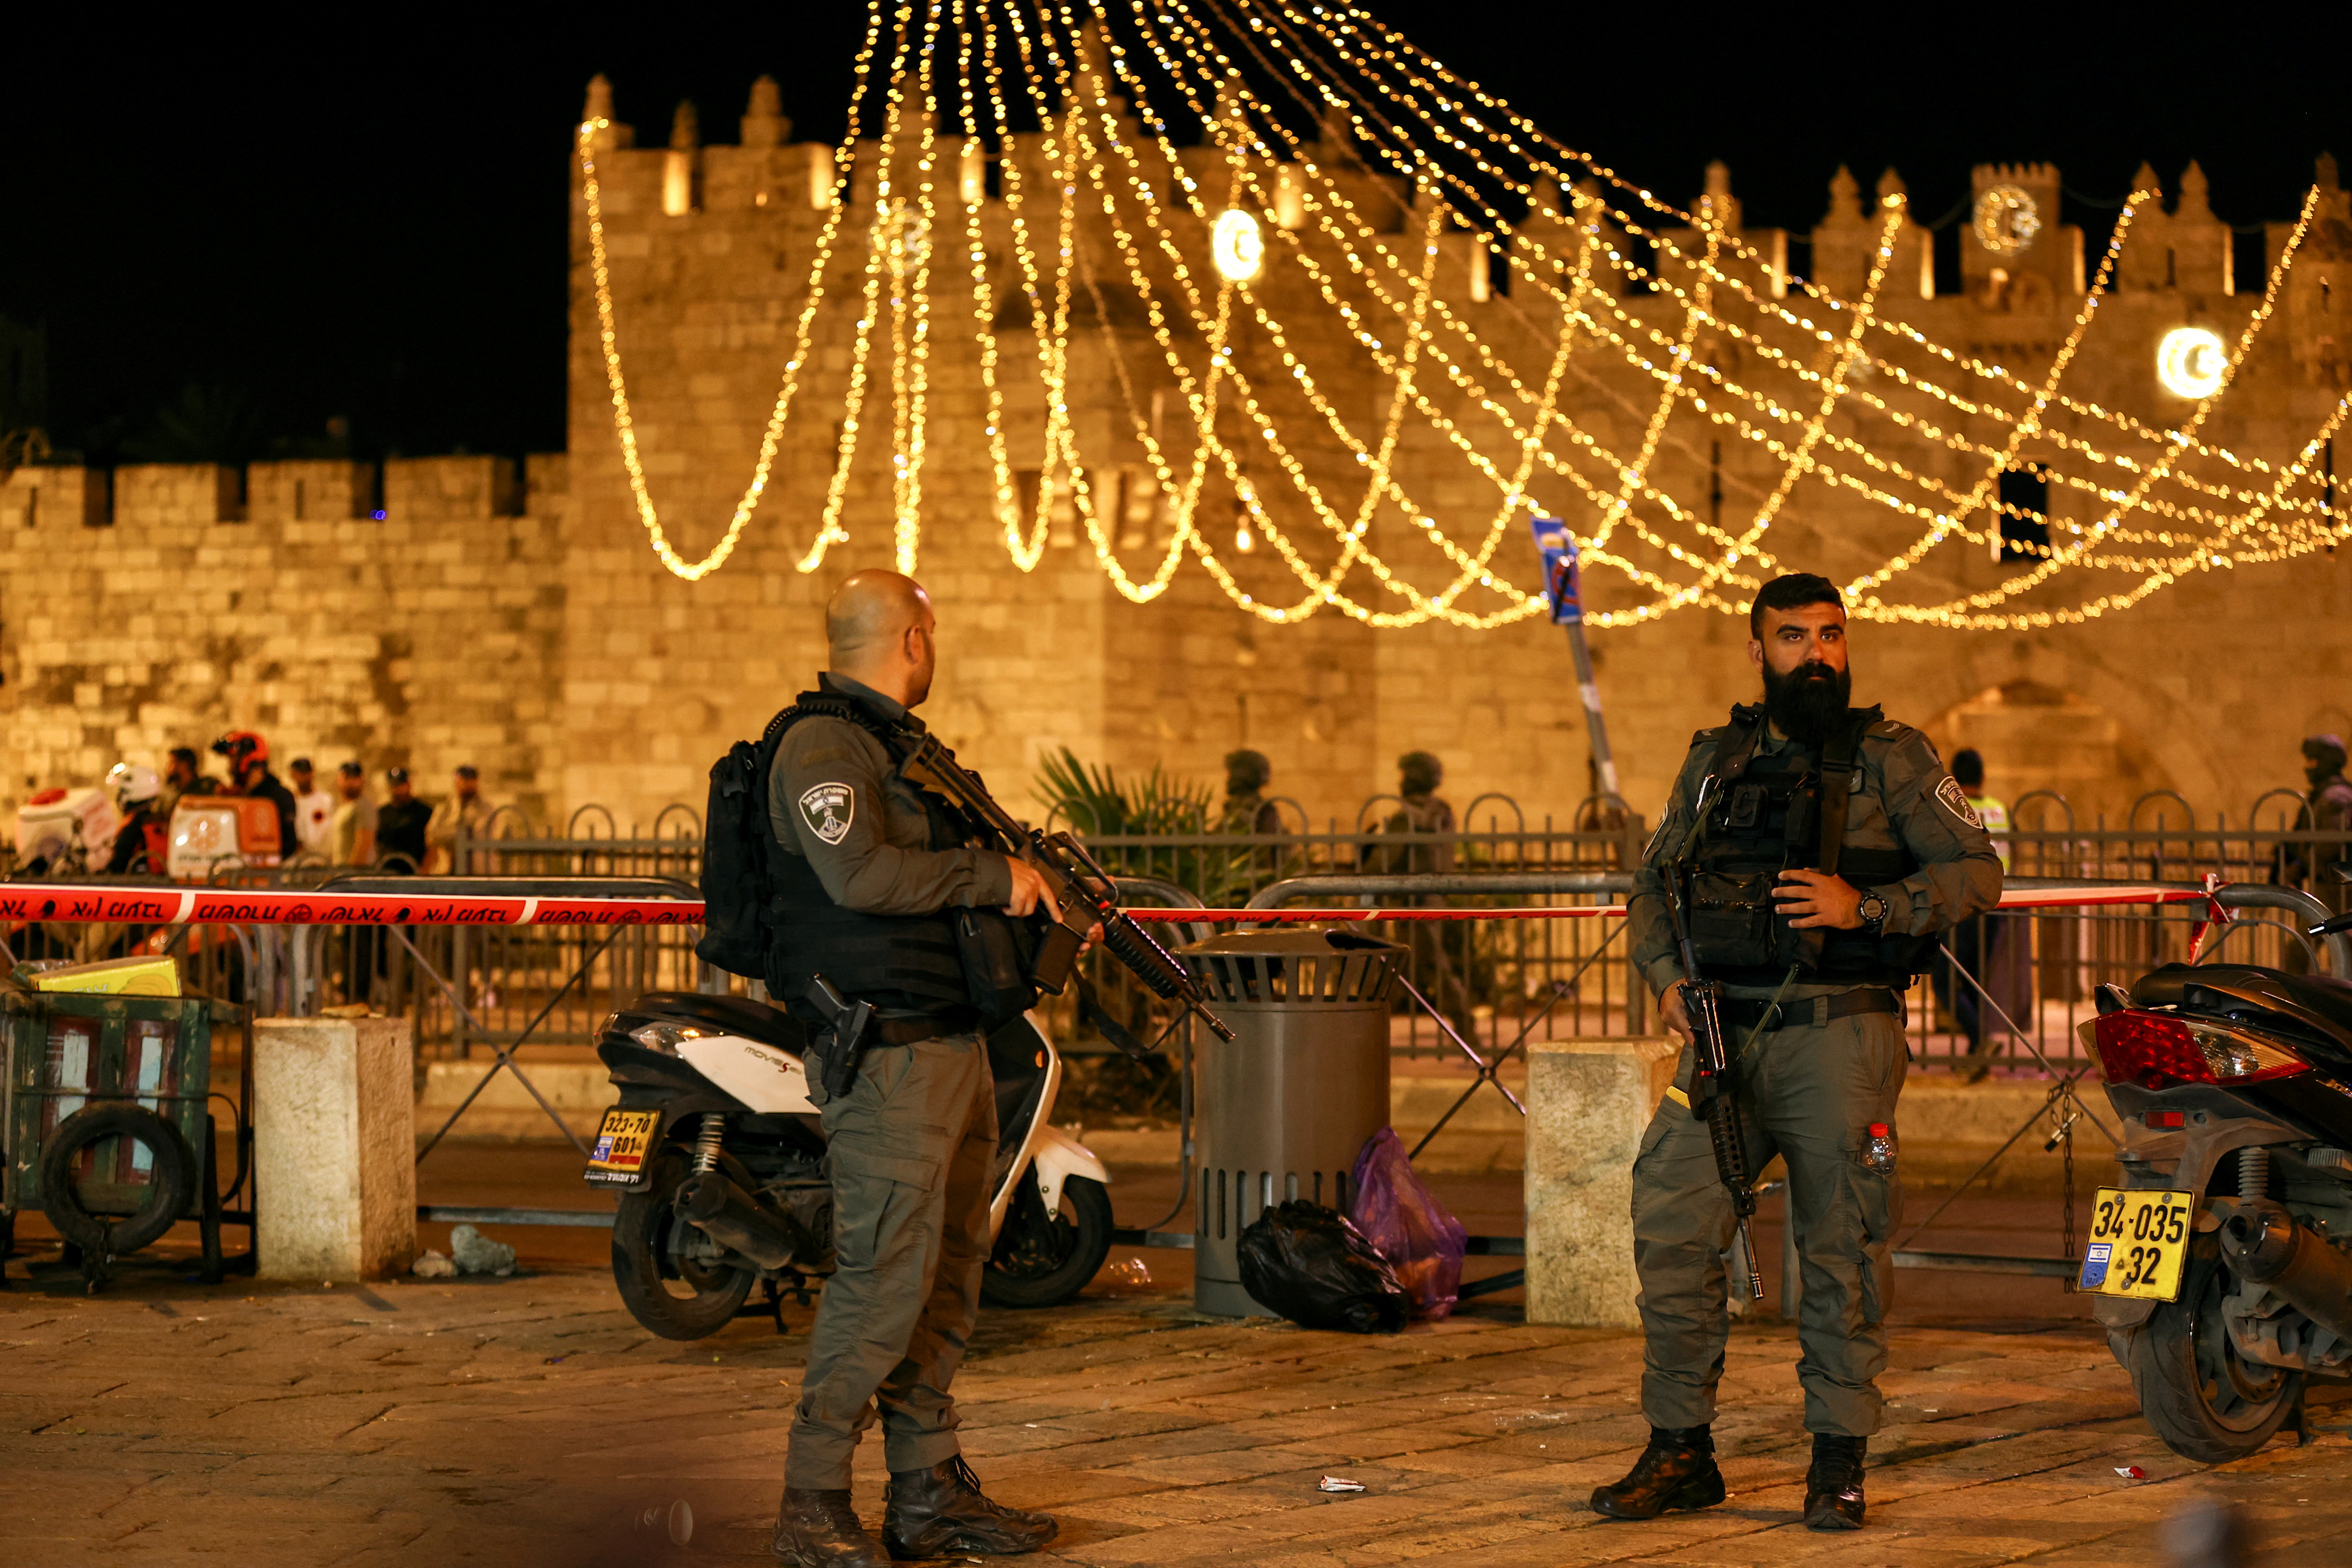 La policía fronteriza israelí asegura la zona alrededor de la puerta de Damasco de la ciudad vieja de Jerusalén (REUTERS/Ronen Zvulun)